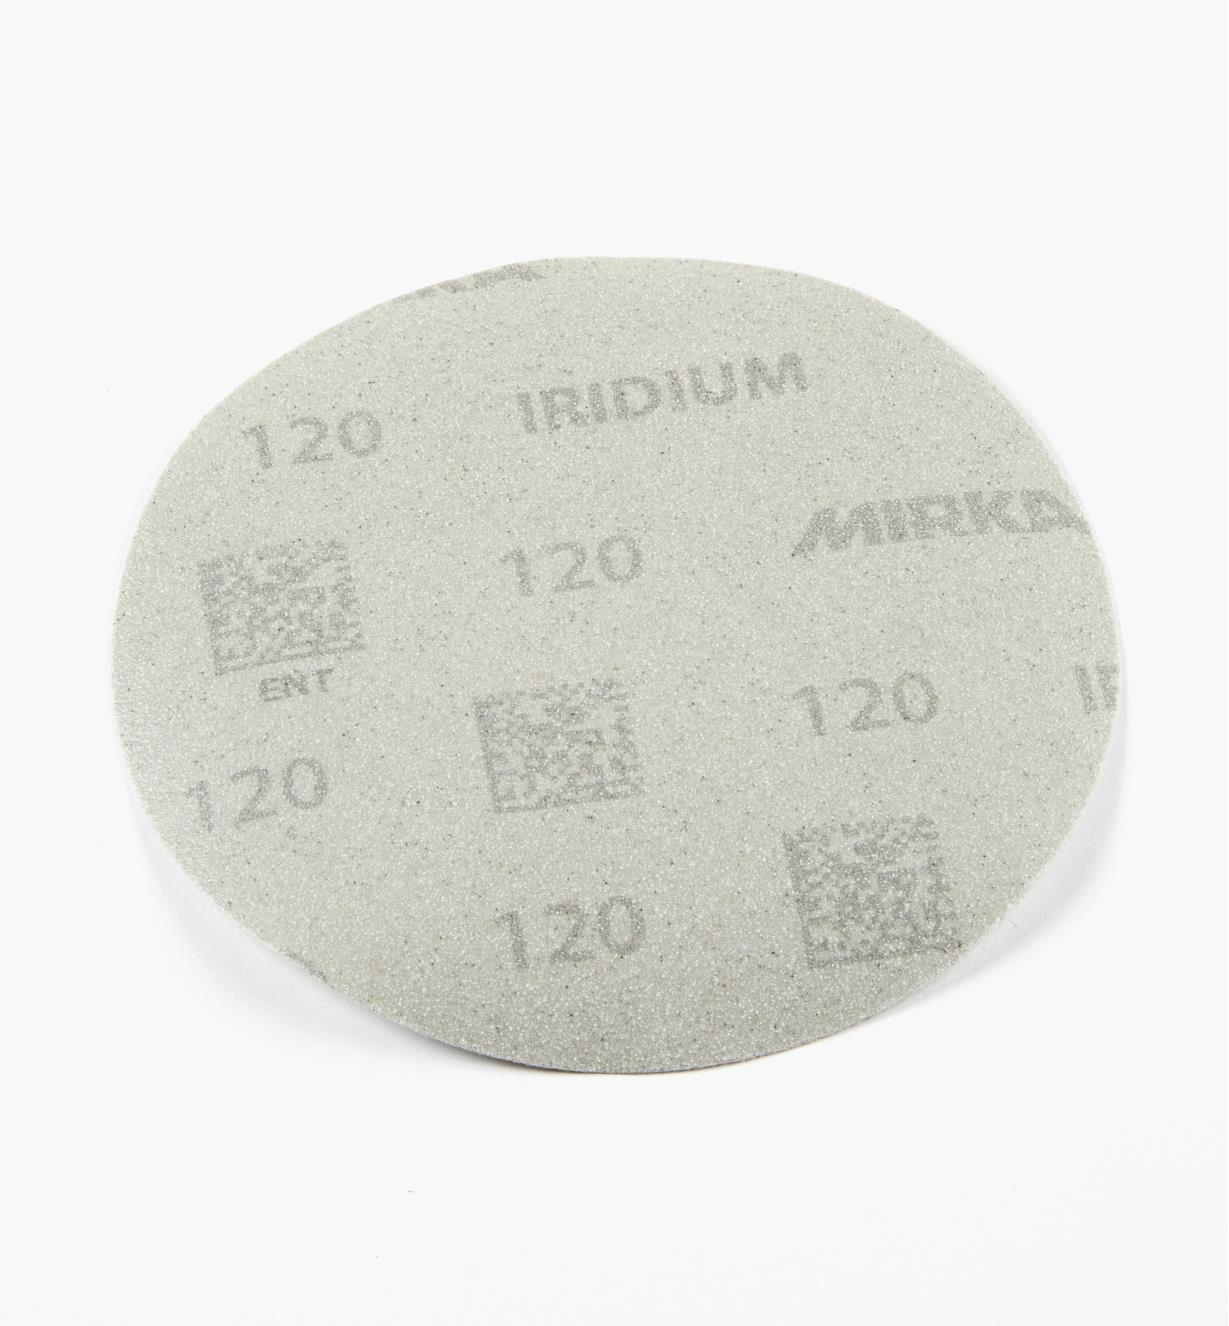 08K1742 - Disque abrasif autoagrippant Iridium, 6 po, sans trous, grain 120, l'unité